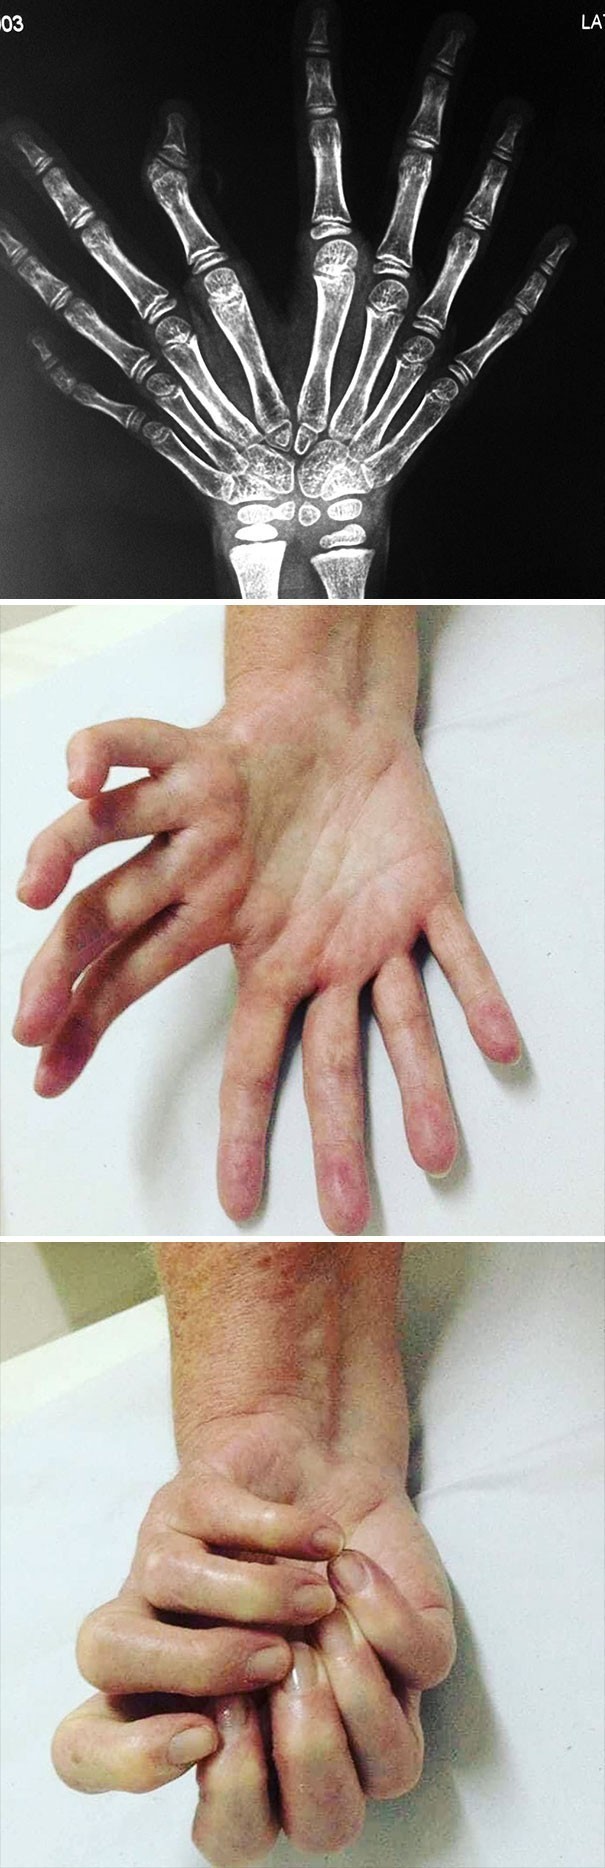 6. Bardzo rzadka wada wrodzona znana jako "lustrzana dłoń."